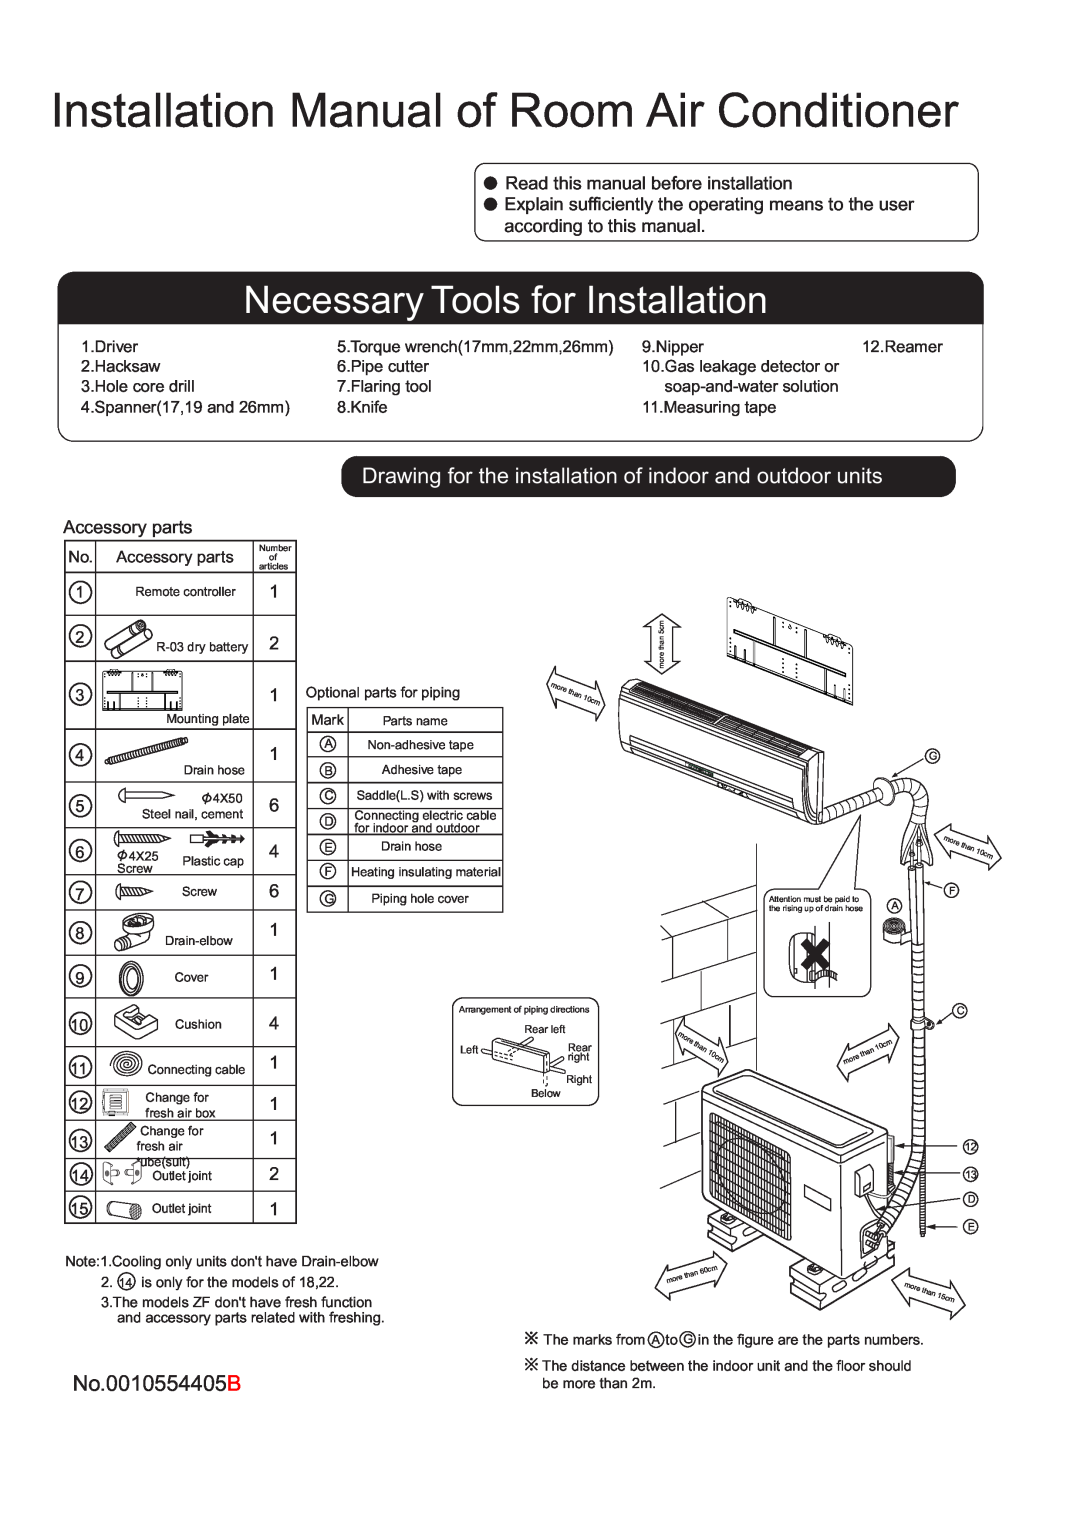 Haier HSU-24HD0307 installation manual Installation Manual of Room Air Conditioner, Necessary Tools for Installation 